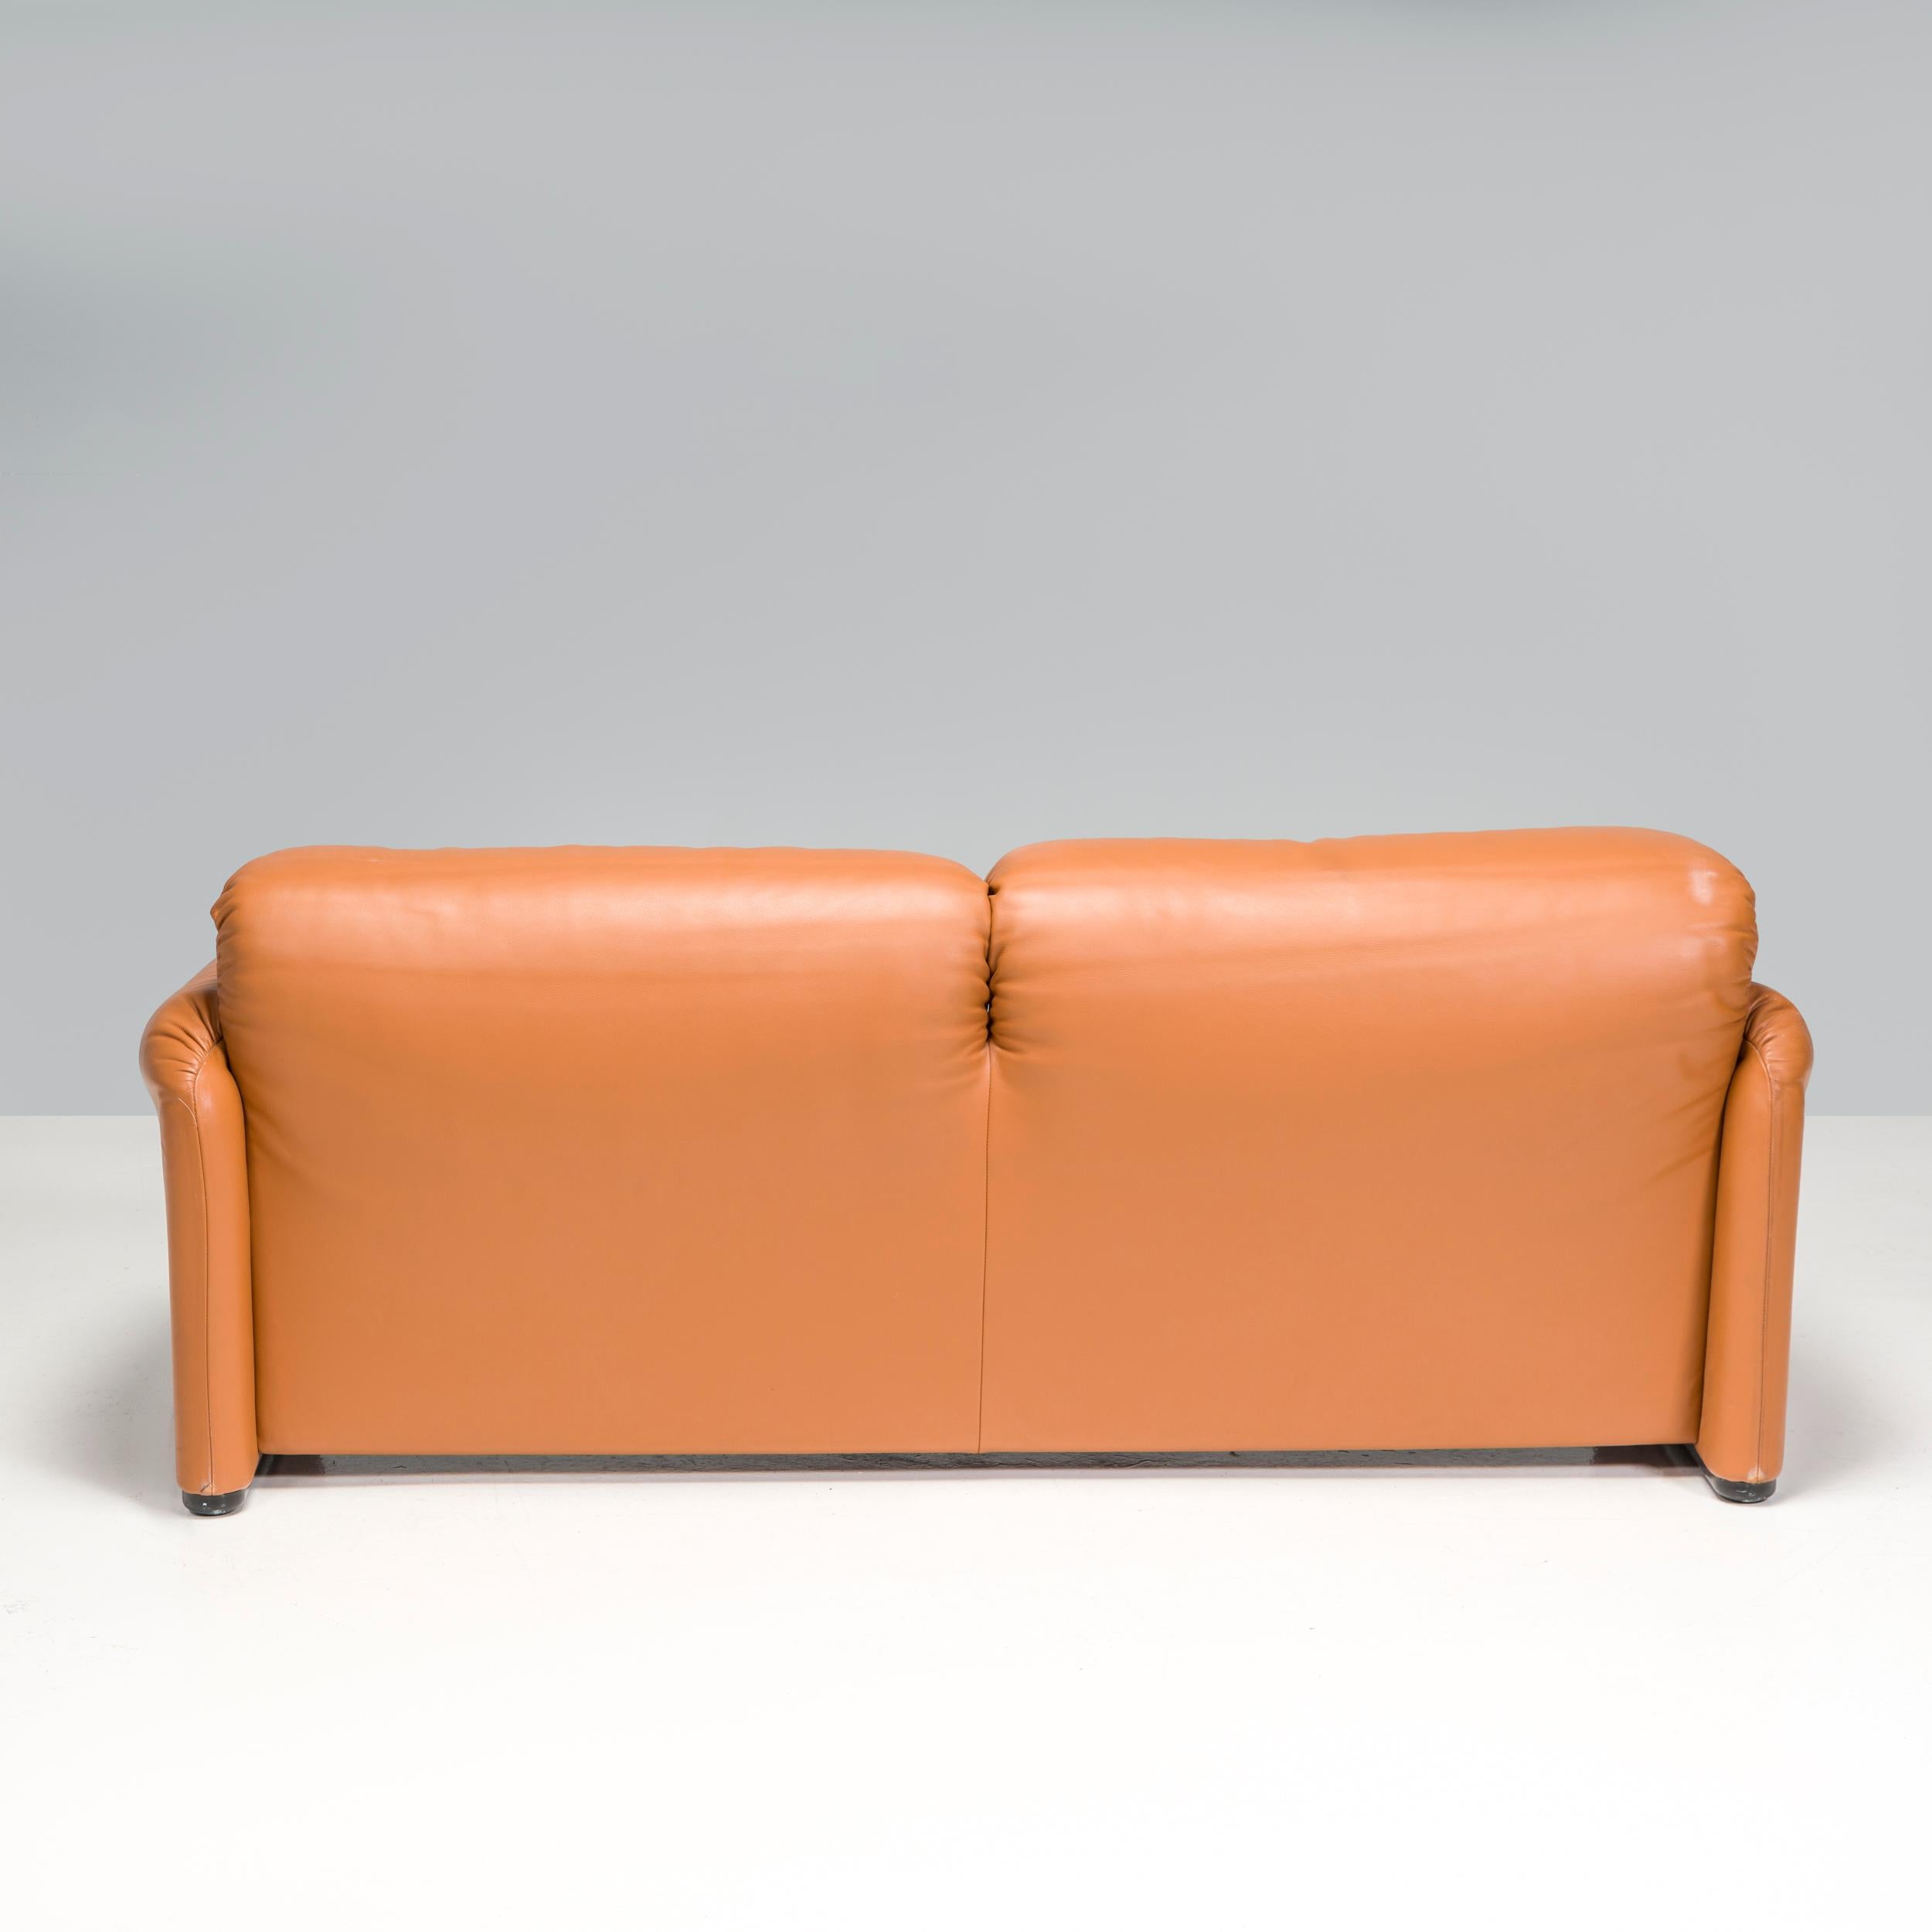 Cassina by Vico Magistretti Maralunga Tan Leather Two-Seater Sofa 1